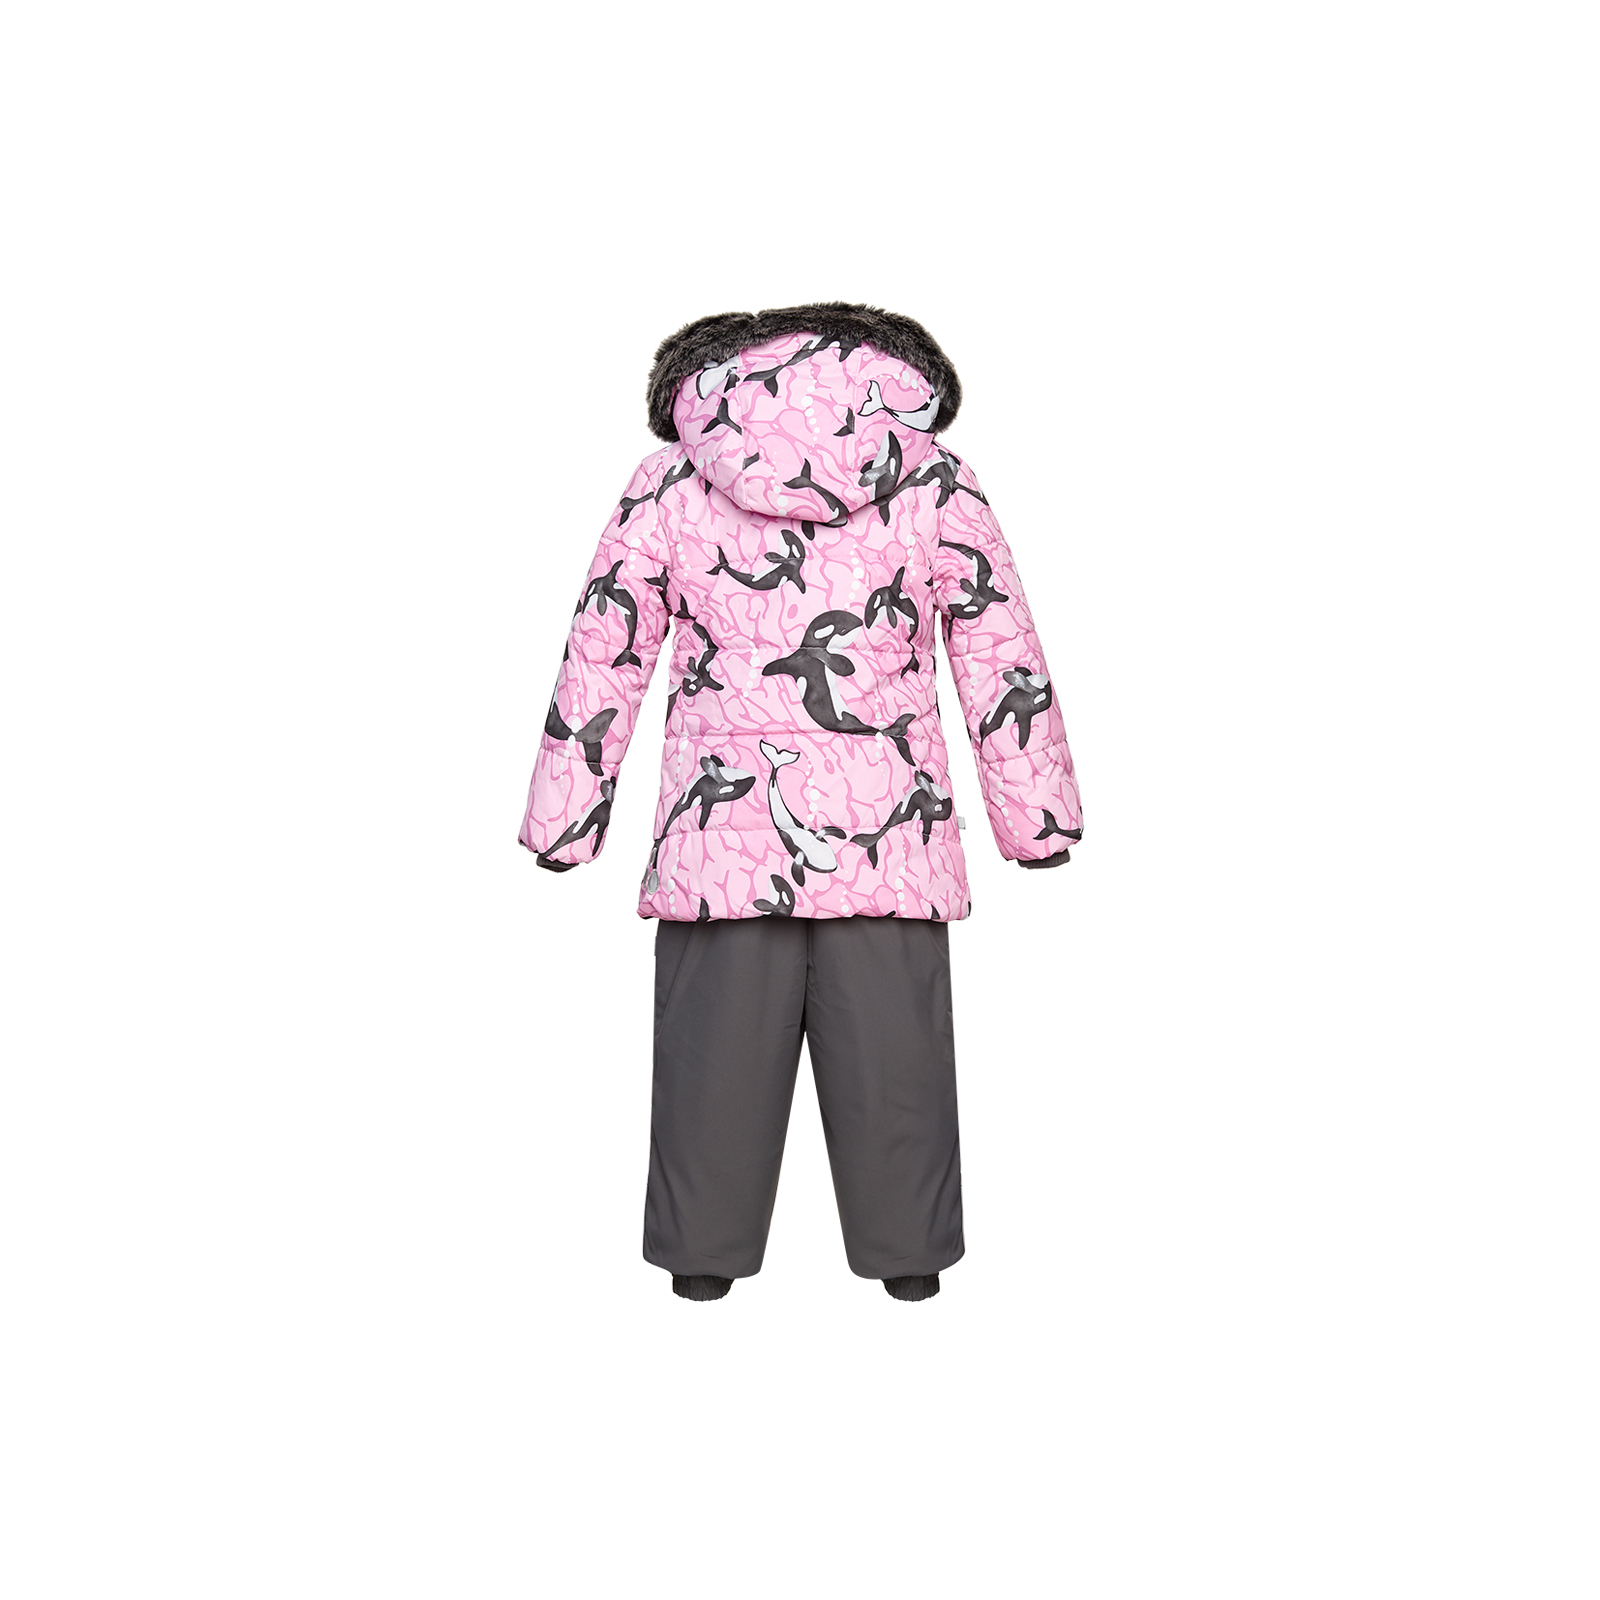 Комплект верхней одежды Huppa BELINDA 1 45090130 cветло-розовый с принтом/серый 110 (4741468977386) изображение 2